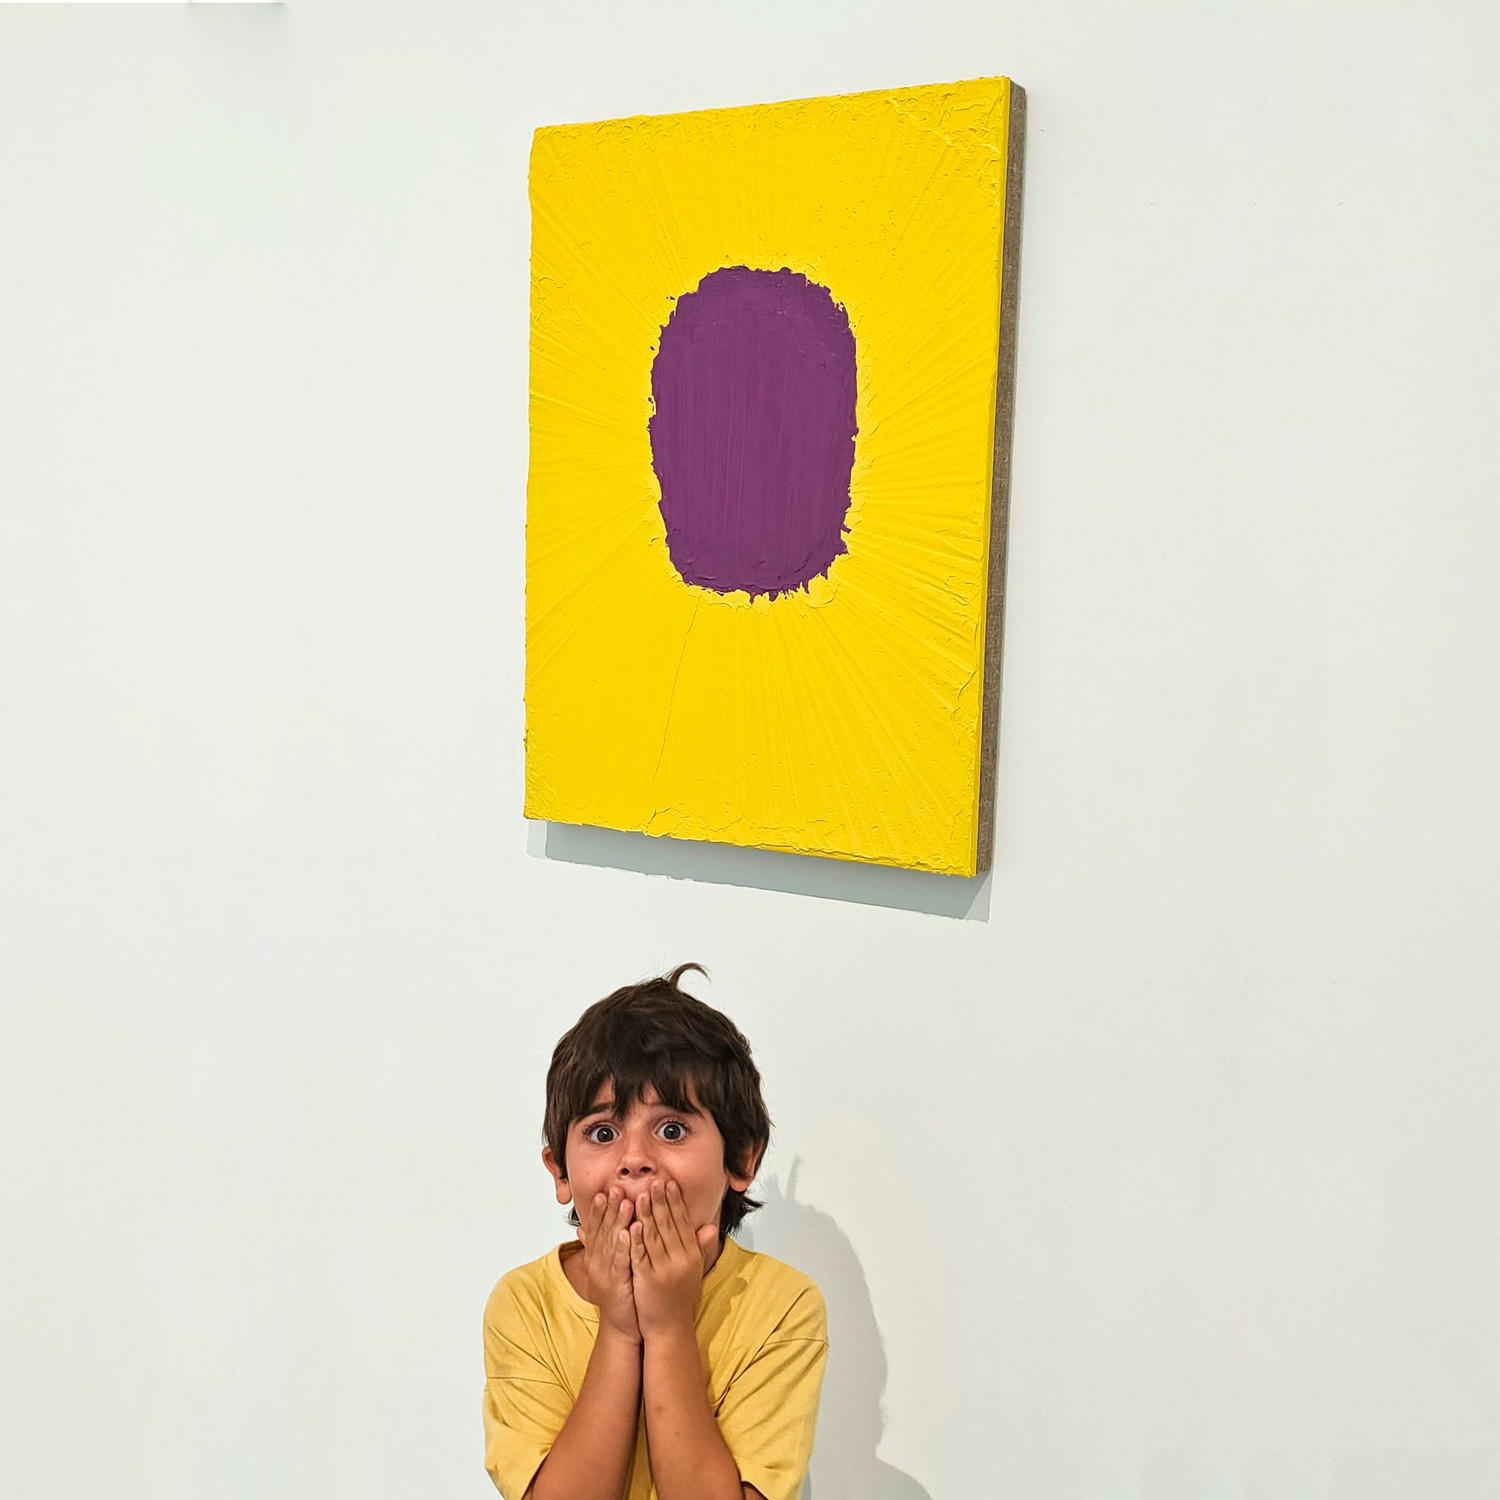 Vista frontal de un niño mirando a cámara mientras se tapa la boca con las manos y abre los ojos en señal de sorpresa. Tras él, la obra 'Incluso en la nieve de azufre', de fondo amarillo y en el centro una mancha de color violeta.